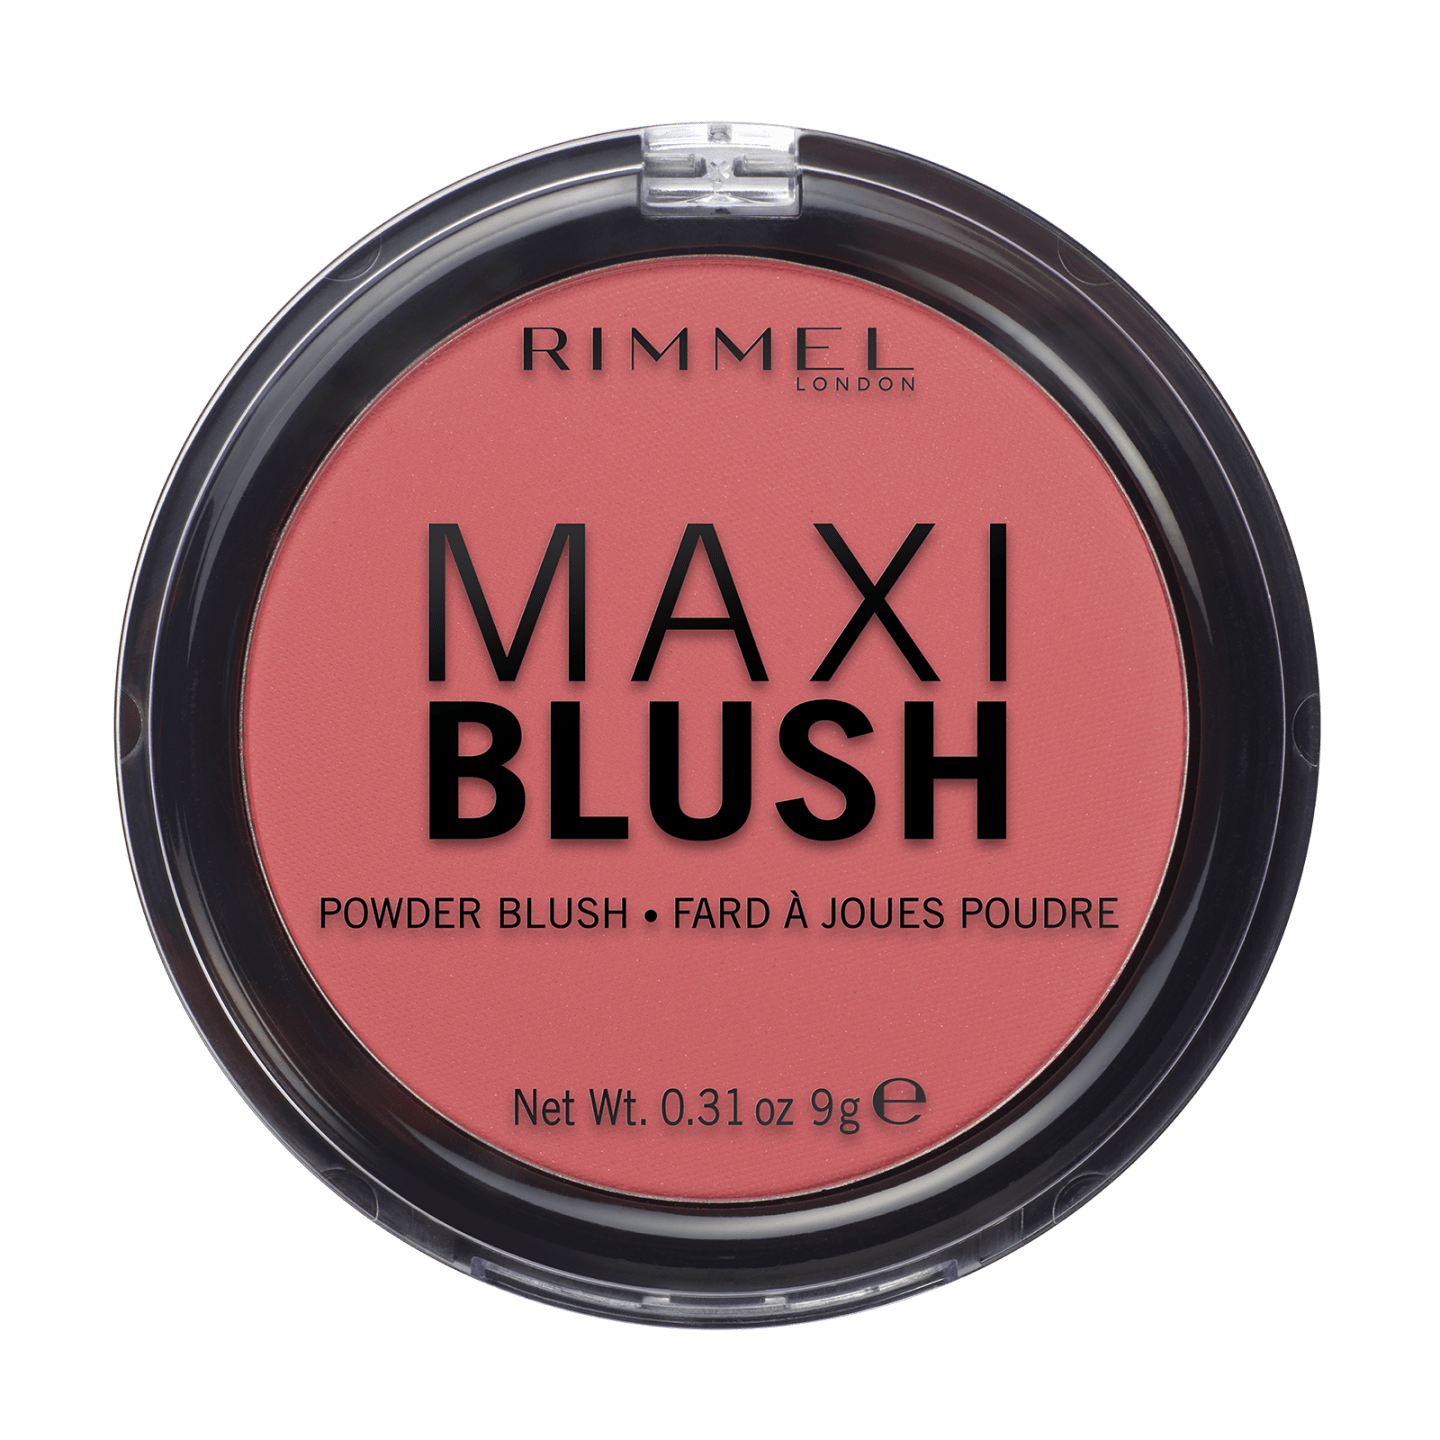 RIMMEL LONDON Maxi Blush